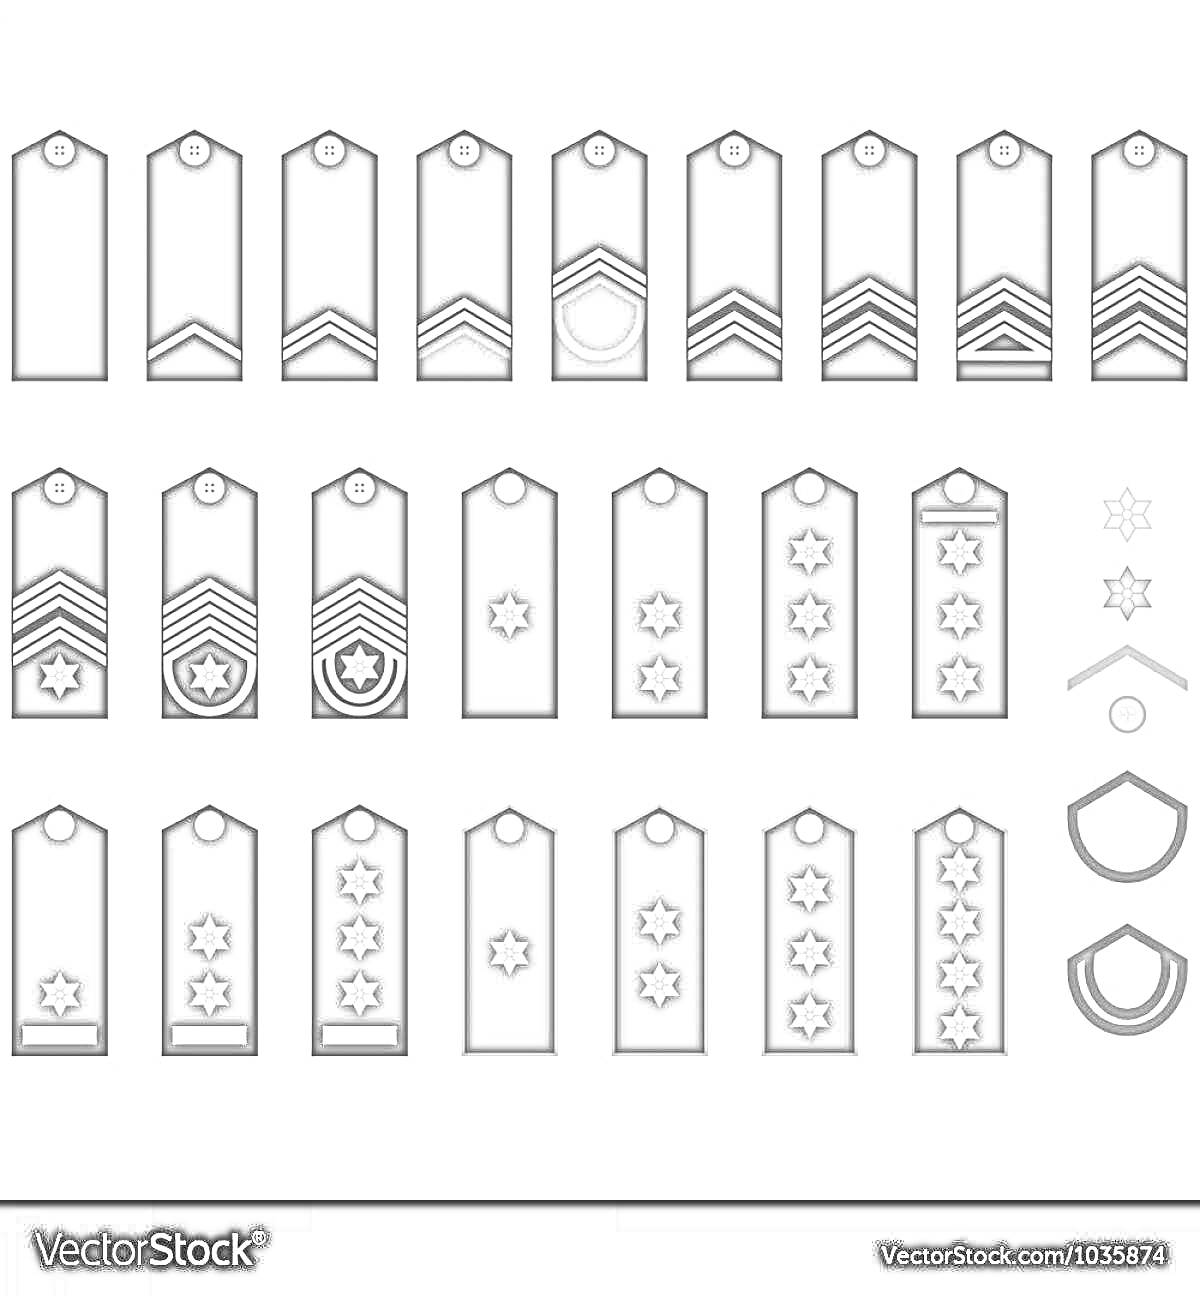 Раскраска Шаблоны погон с различными элементами: полоски, звезды и шевроны для раскраски детьми